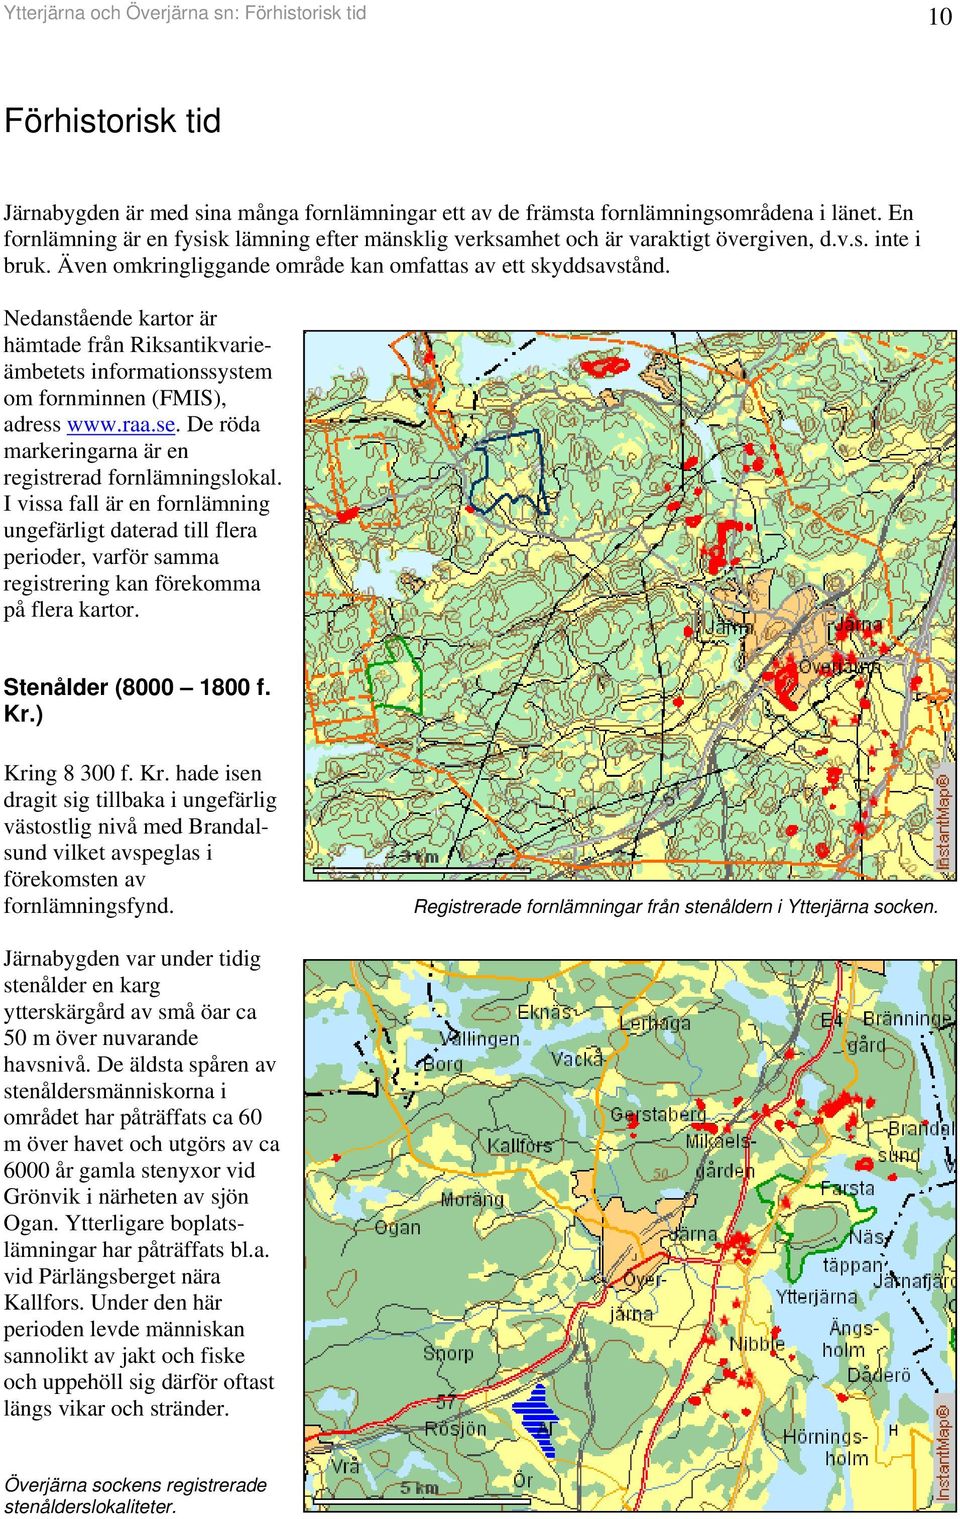 Nedaståede kartor är hämtade frå Riksatikvarieämbetets iformatiossystem om formie (FMIS), adress www.raa.se. De röda markerigara är e registrerad forlämigslokal.